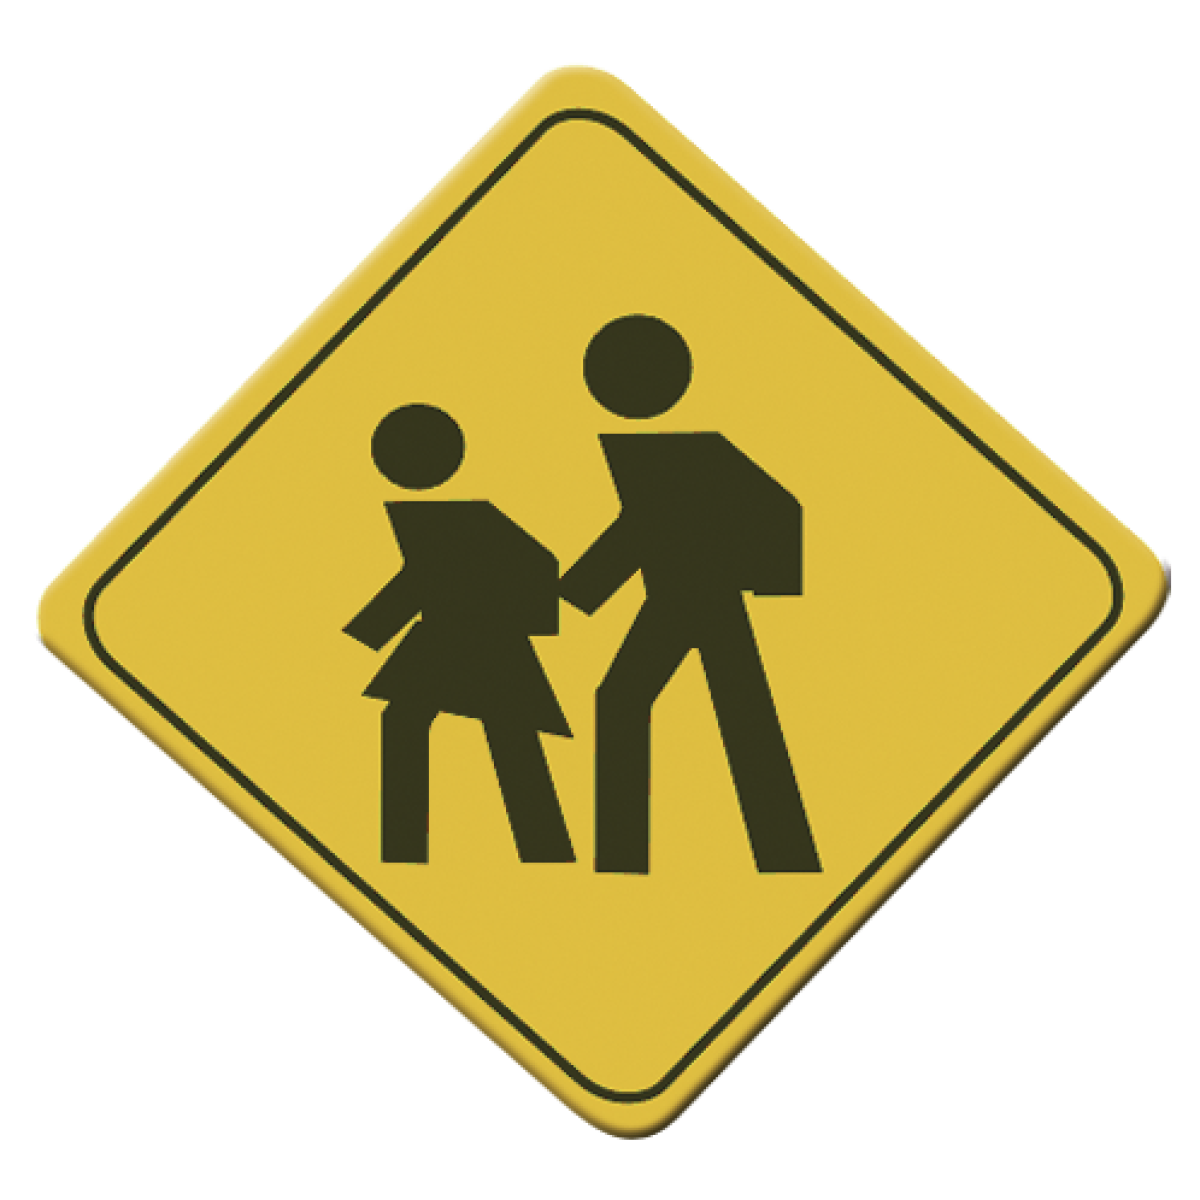 La señal Cruce escolar es escencial para brindar una mejor seguridad en zonas de escuelas. Advierte a los conductores de la presencia de niños.